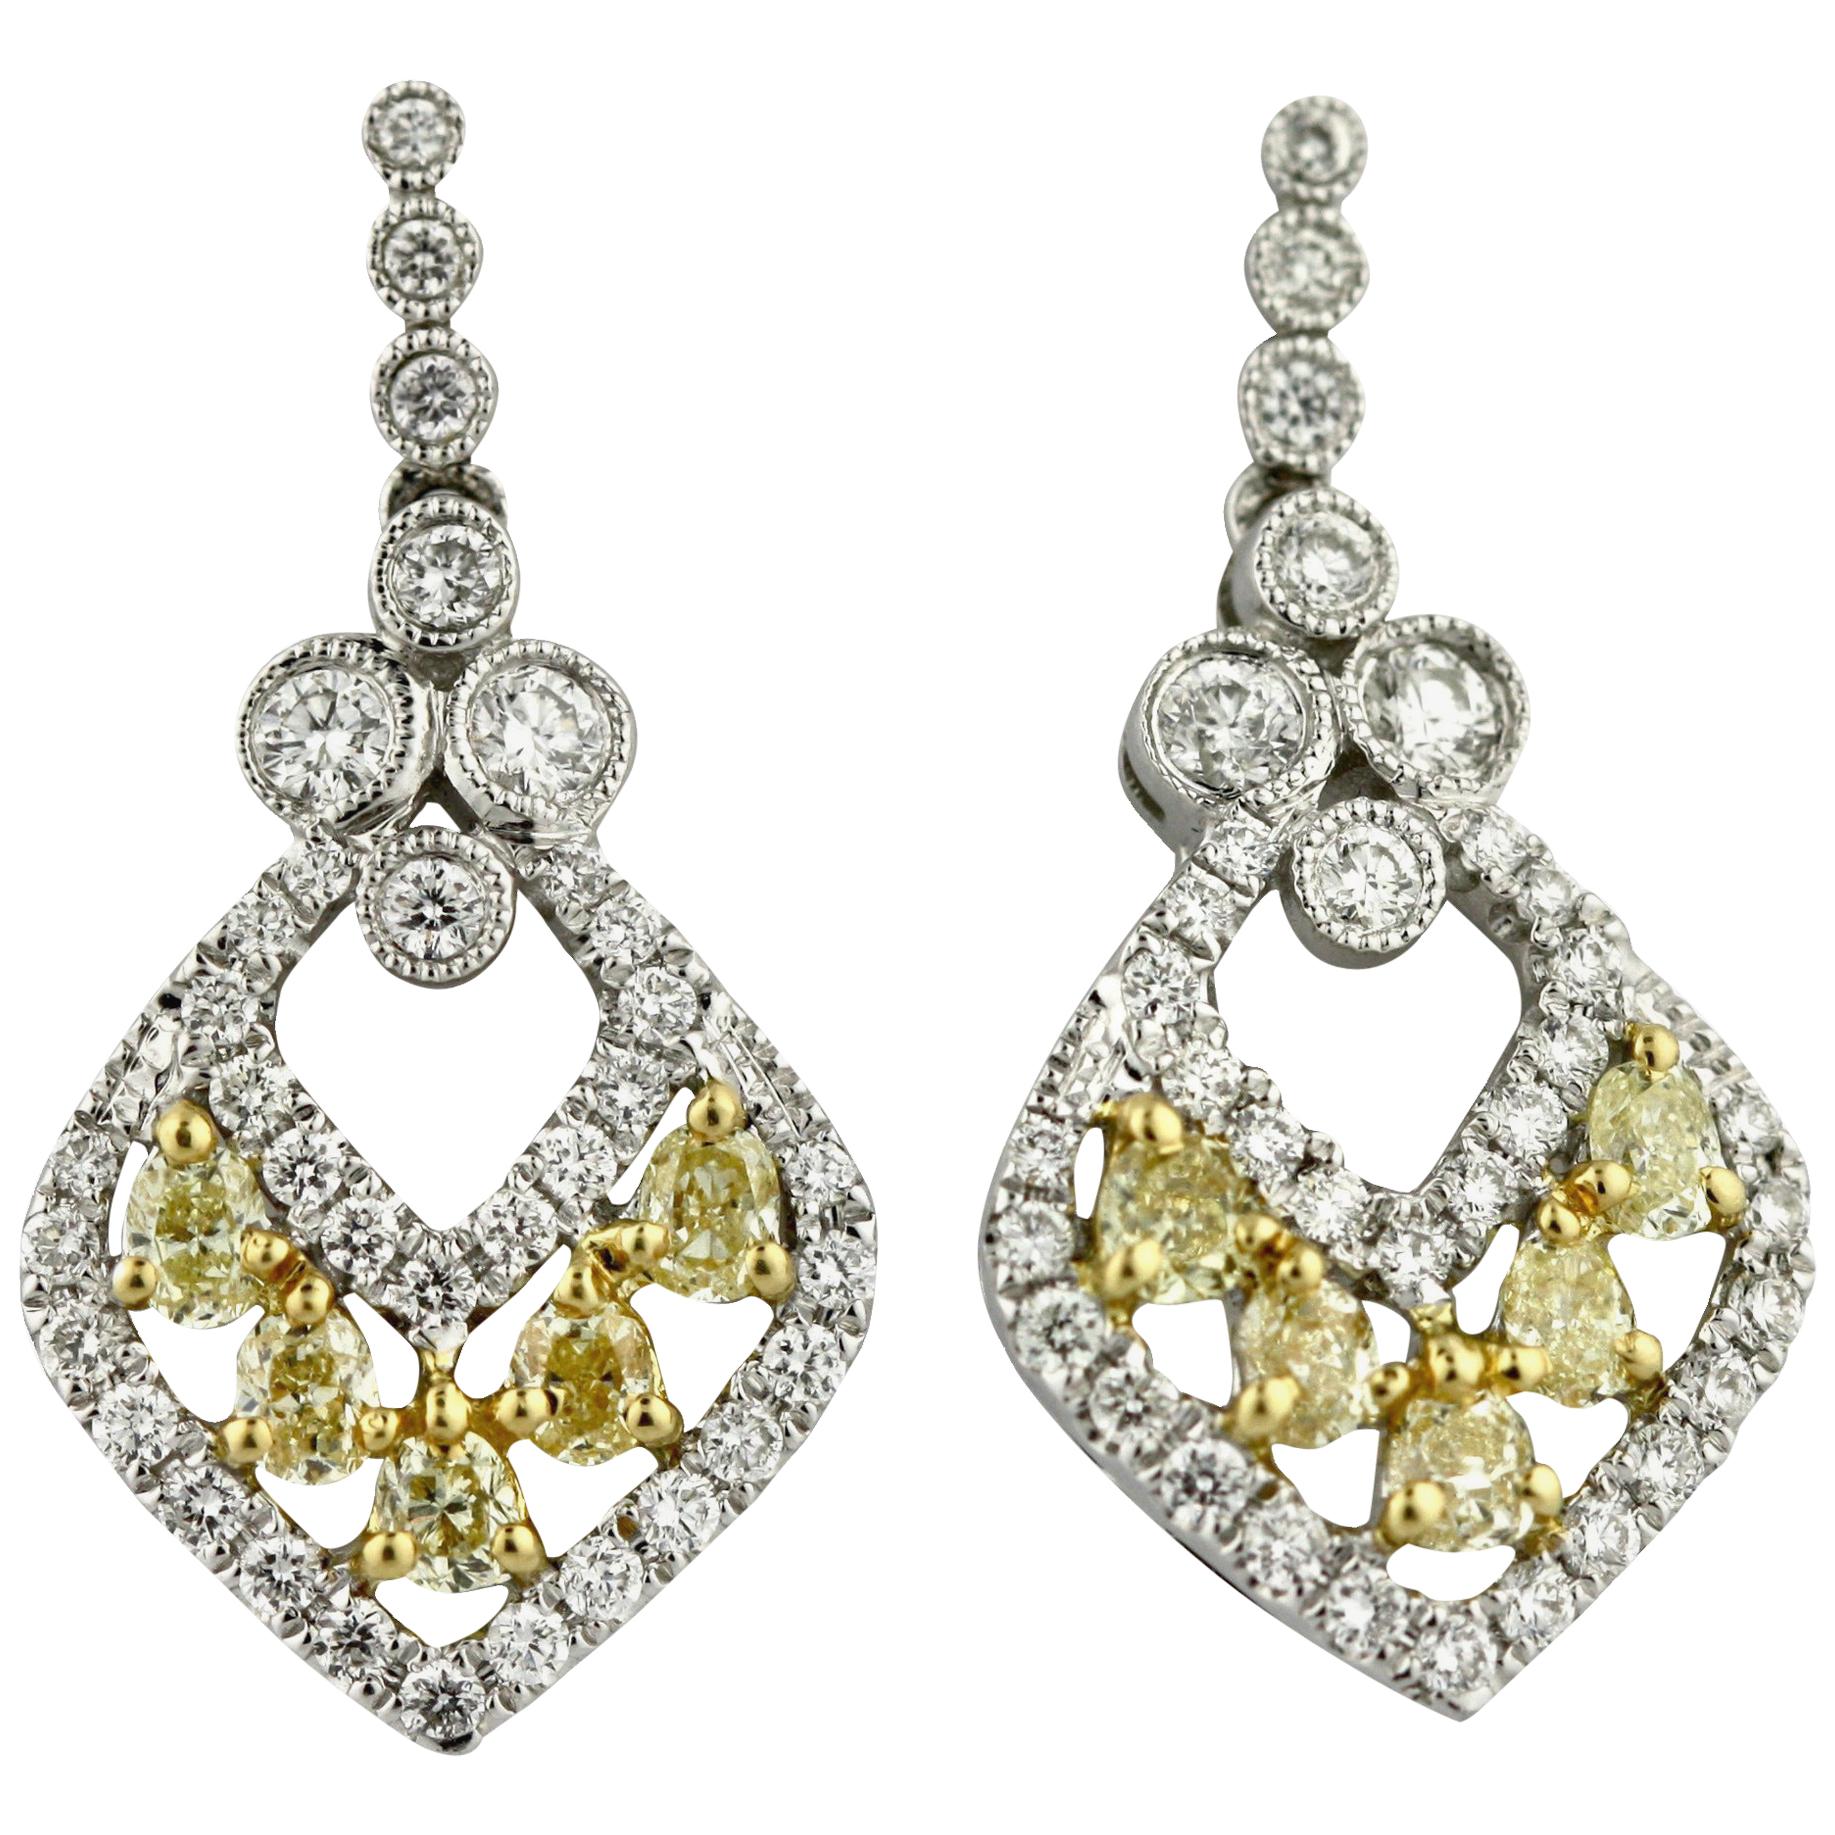 Pair of Yellow Diamond and Diamond Earrings